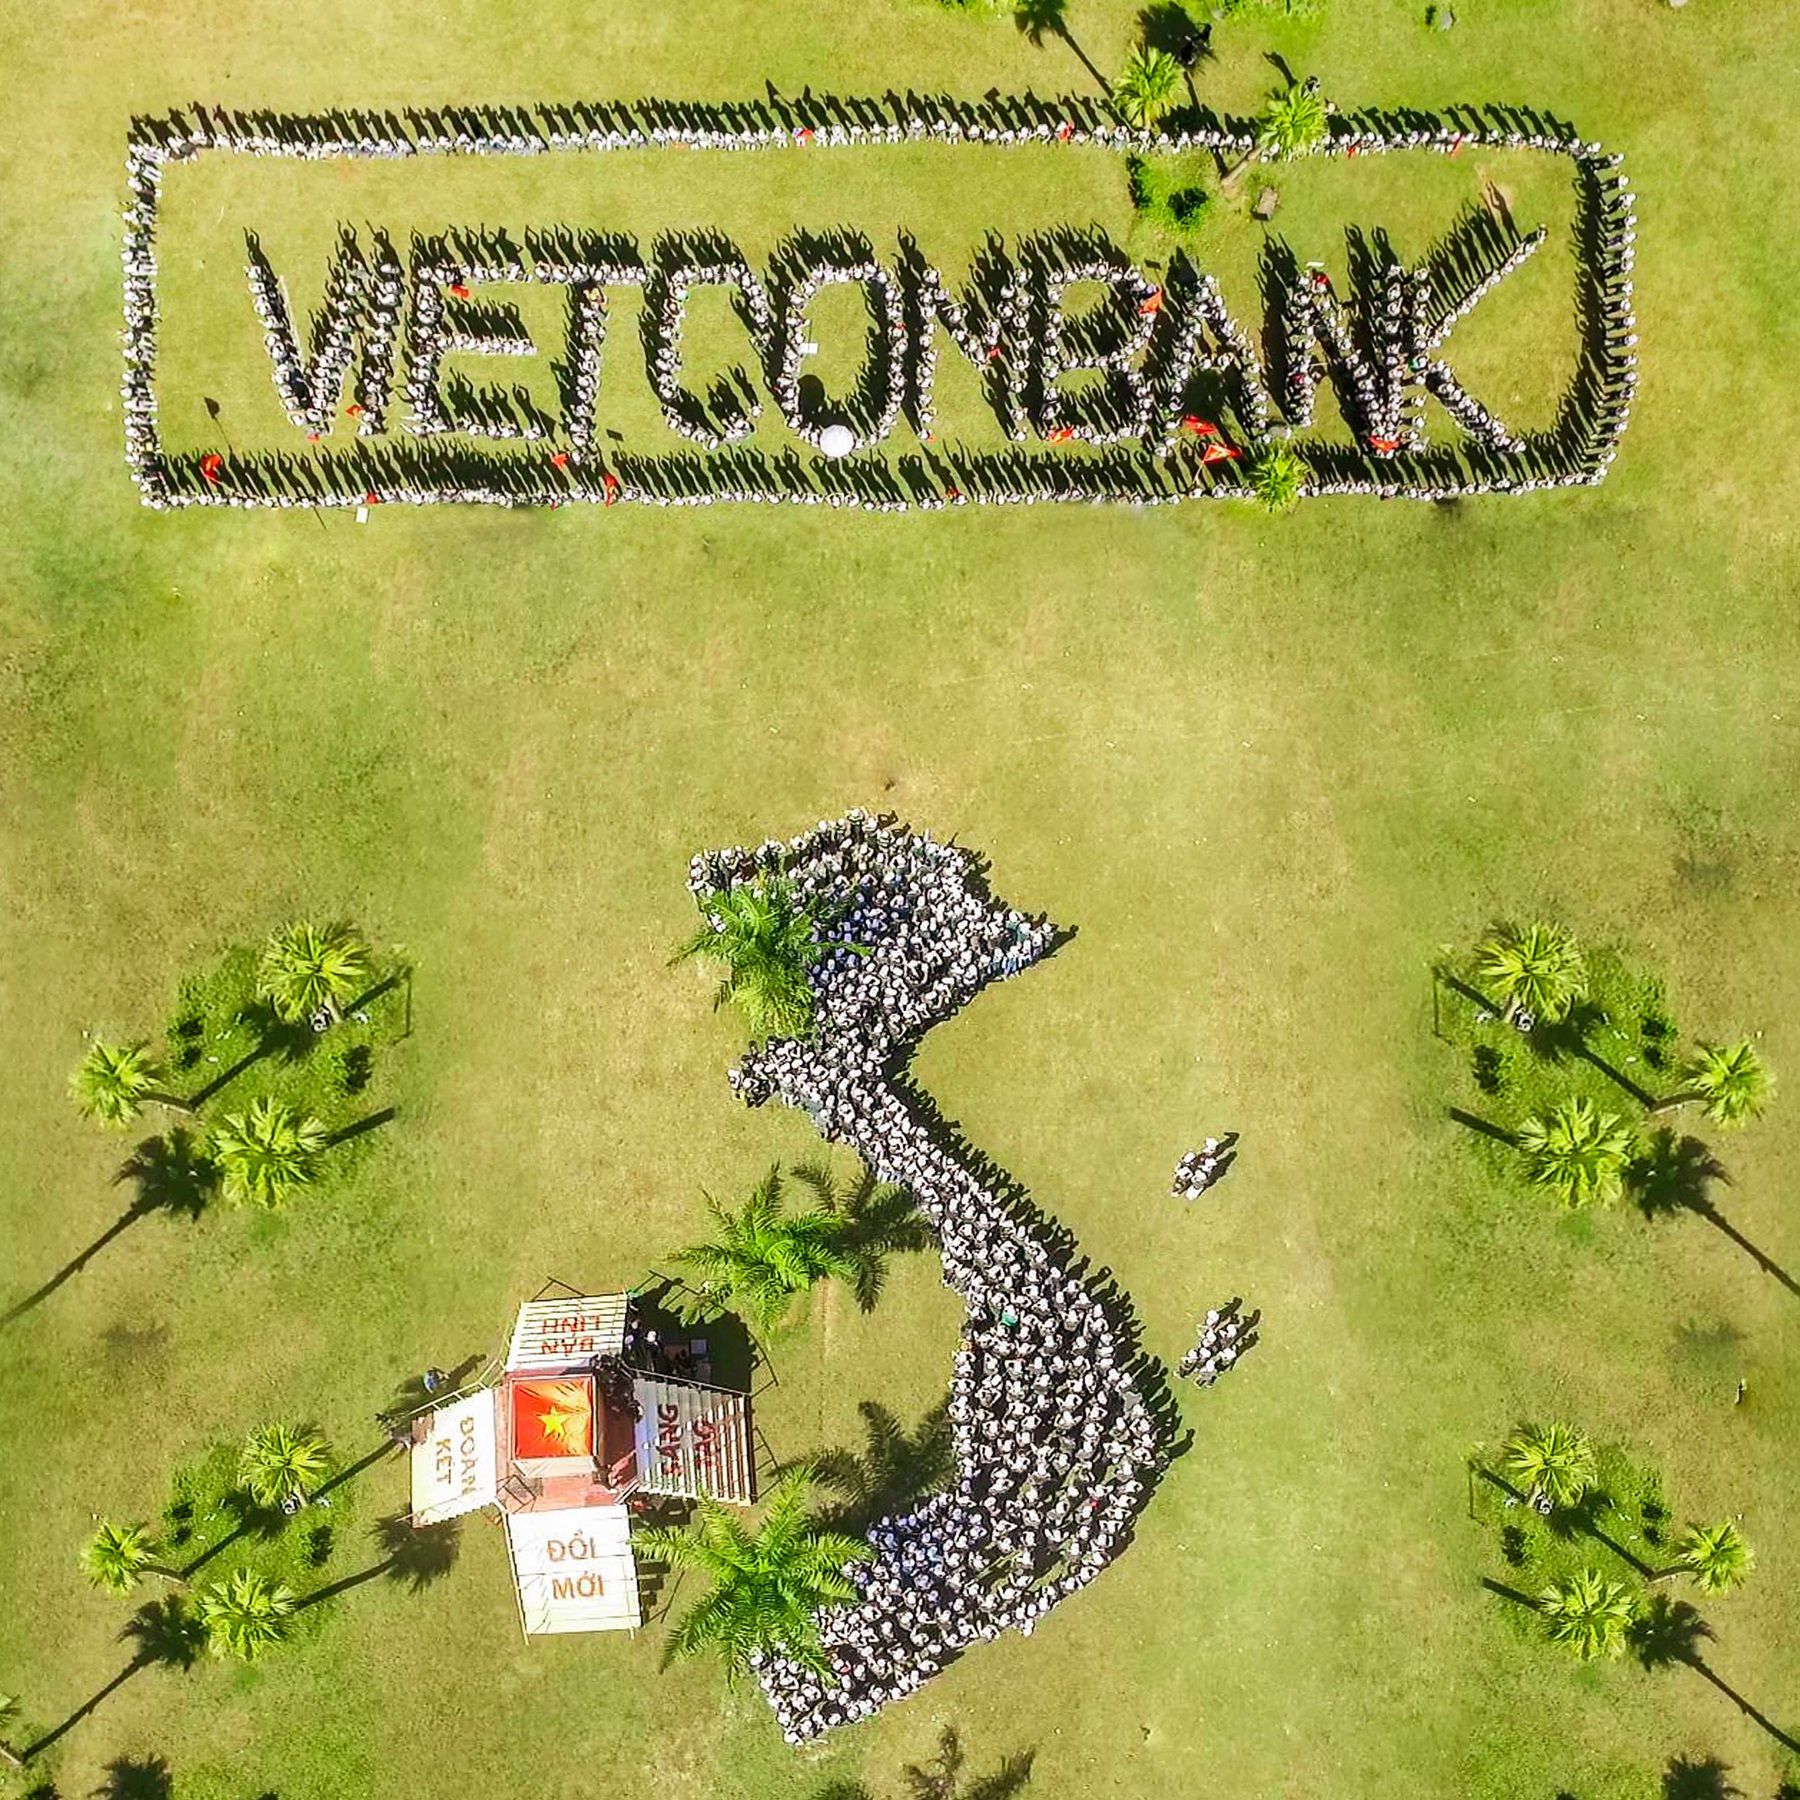 Hơn 700 đoàn viên thanh niên Vietcombank đã chung sức xếp thành hình bản đồ Việt Nam và thương hiệu Vietcombank